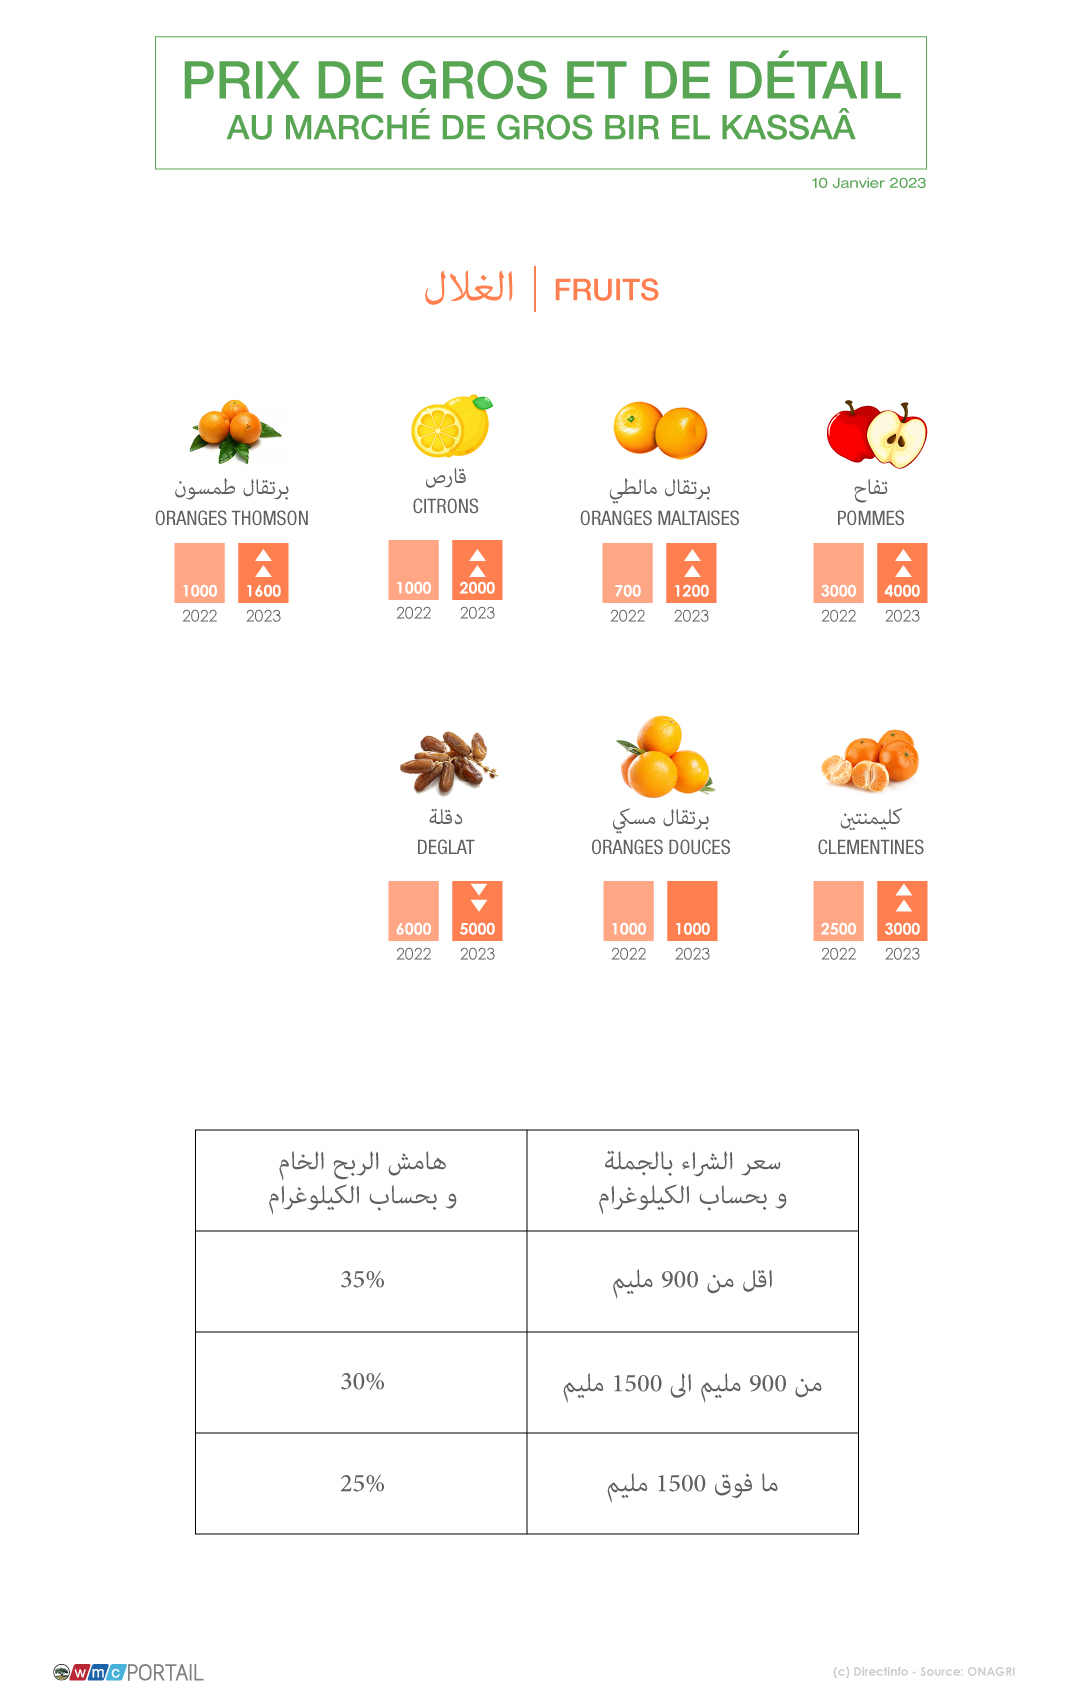 Bir el kassaa fruits - أسعار الخضر والغلال ،اللحوم والأسماك بسوق الجملة ببئر القصعة..